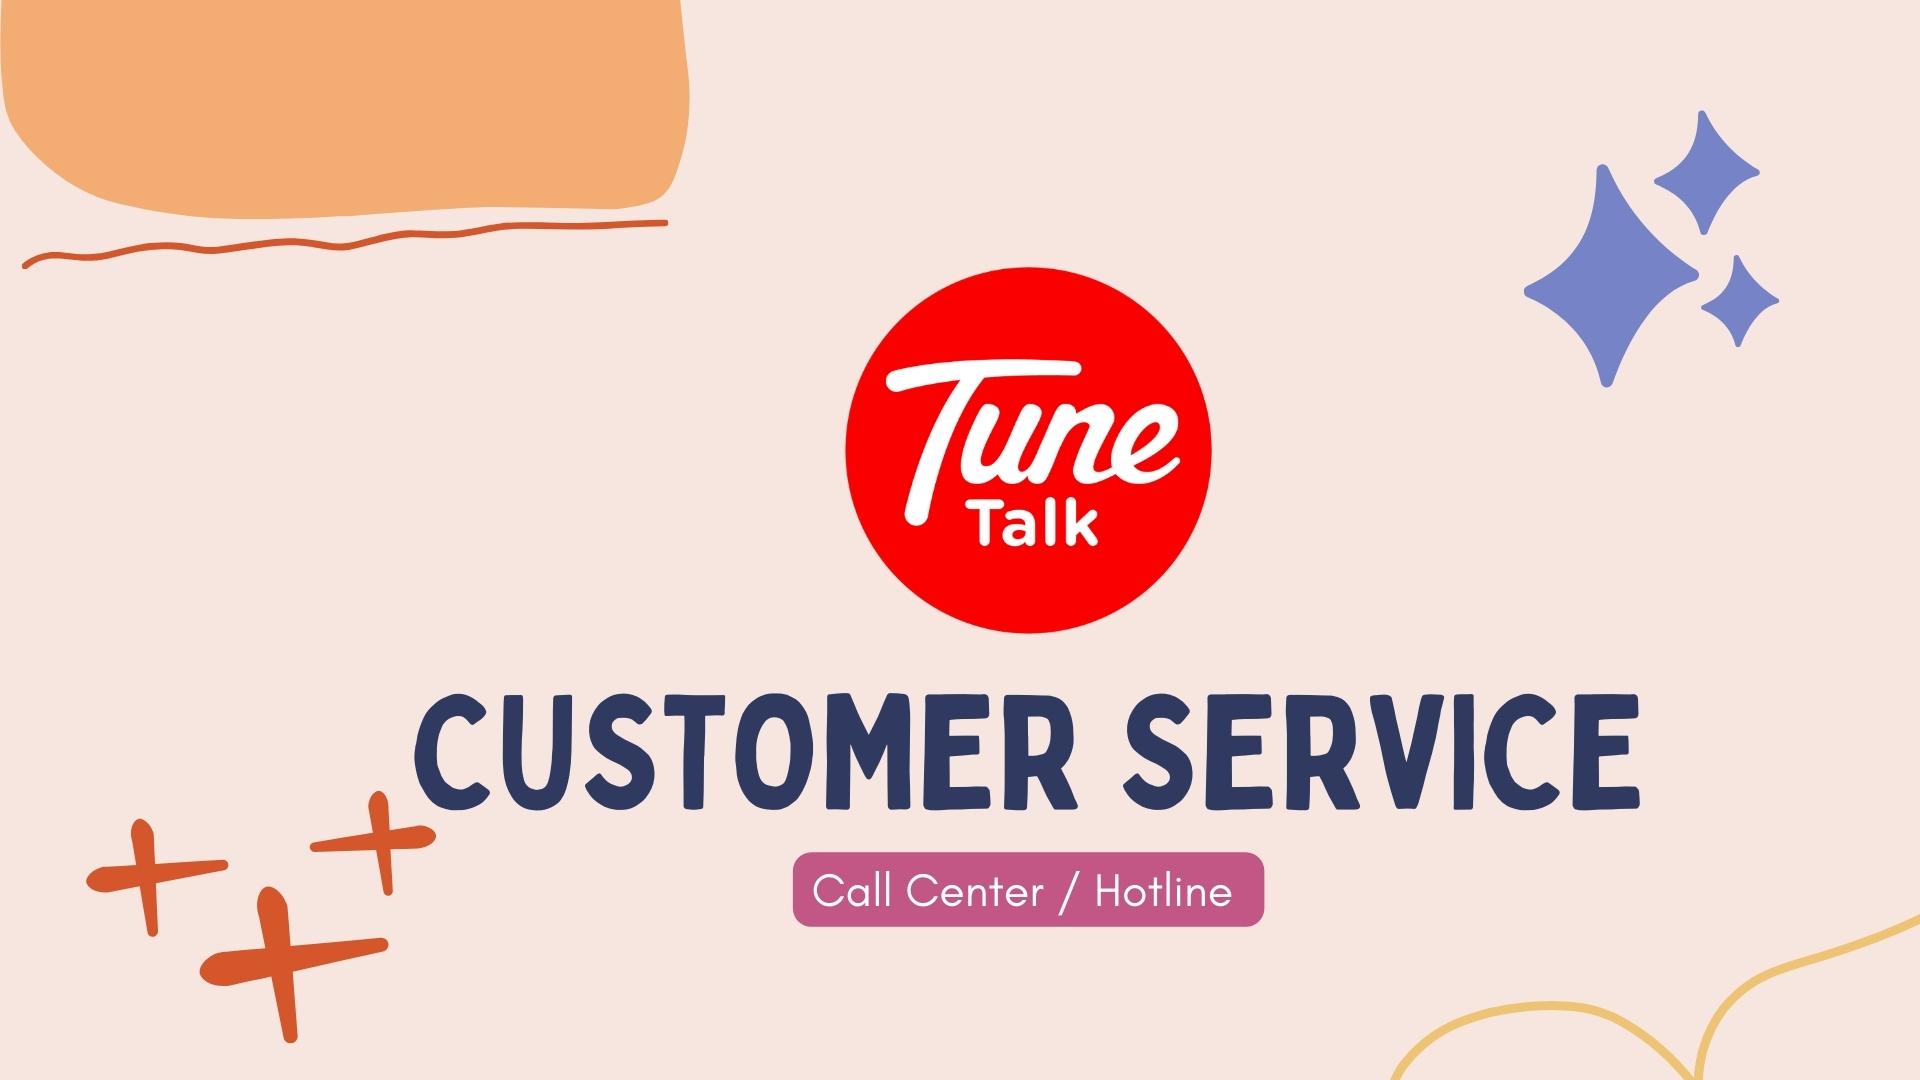 TuneTalk Customer Services